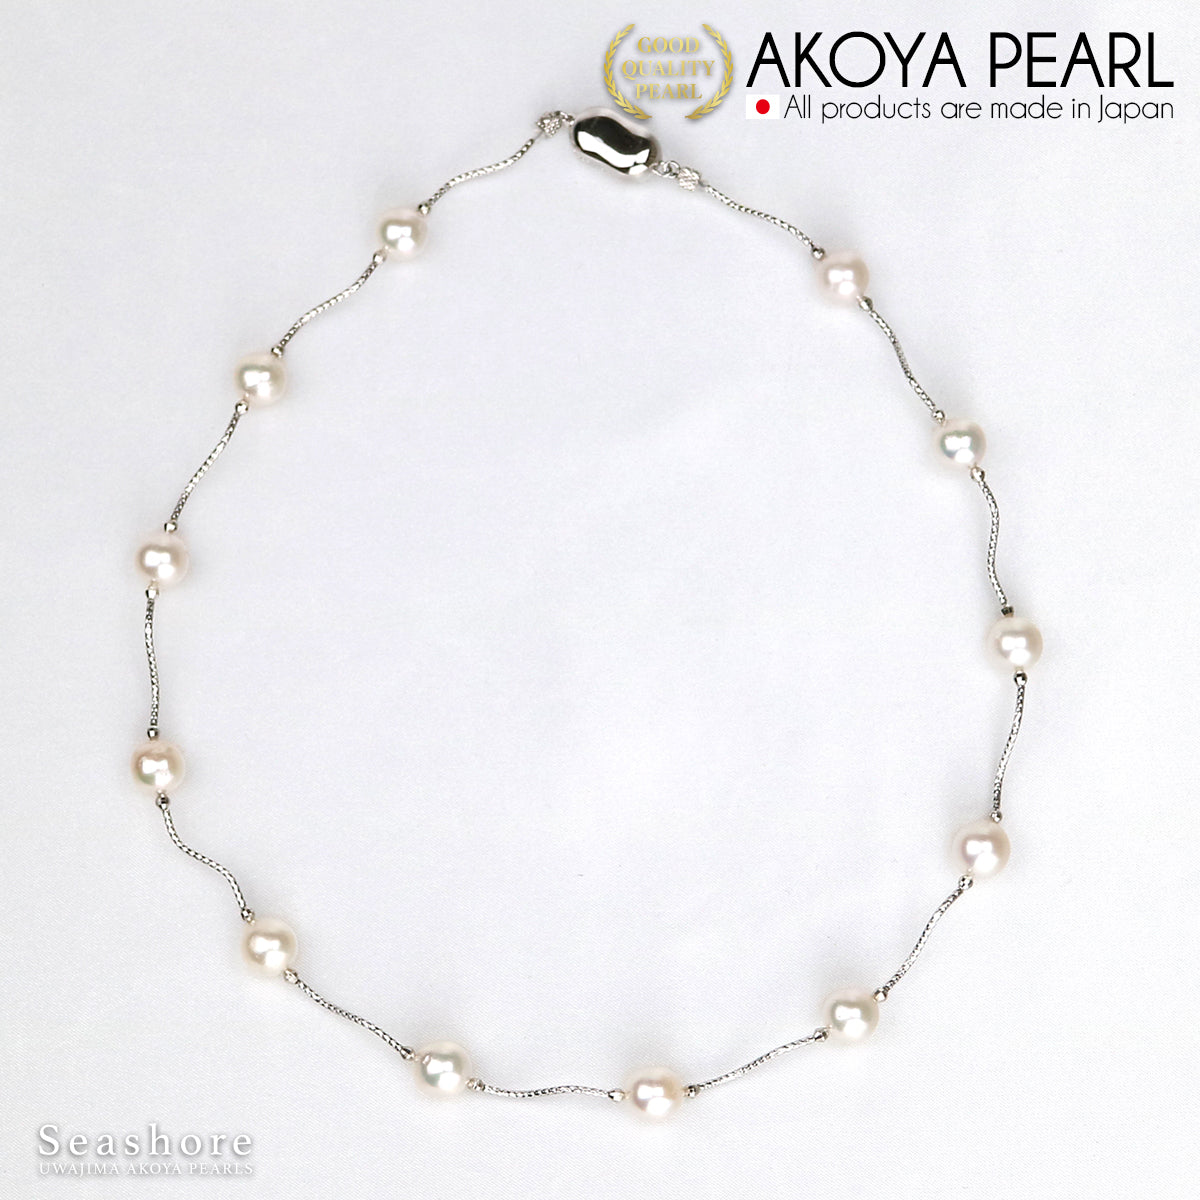 Akoya 珍珠站珍珠项链 [8.5-9.0mm] 12 颗珠子 SV925 铑/金公主款带纸板盒